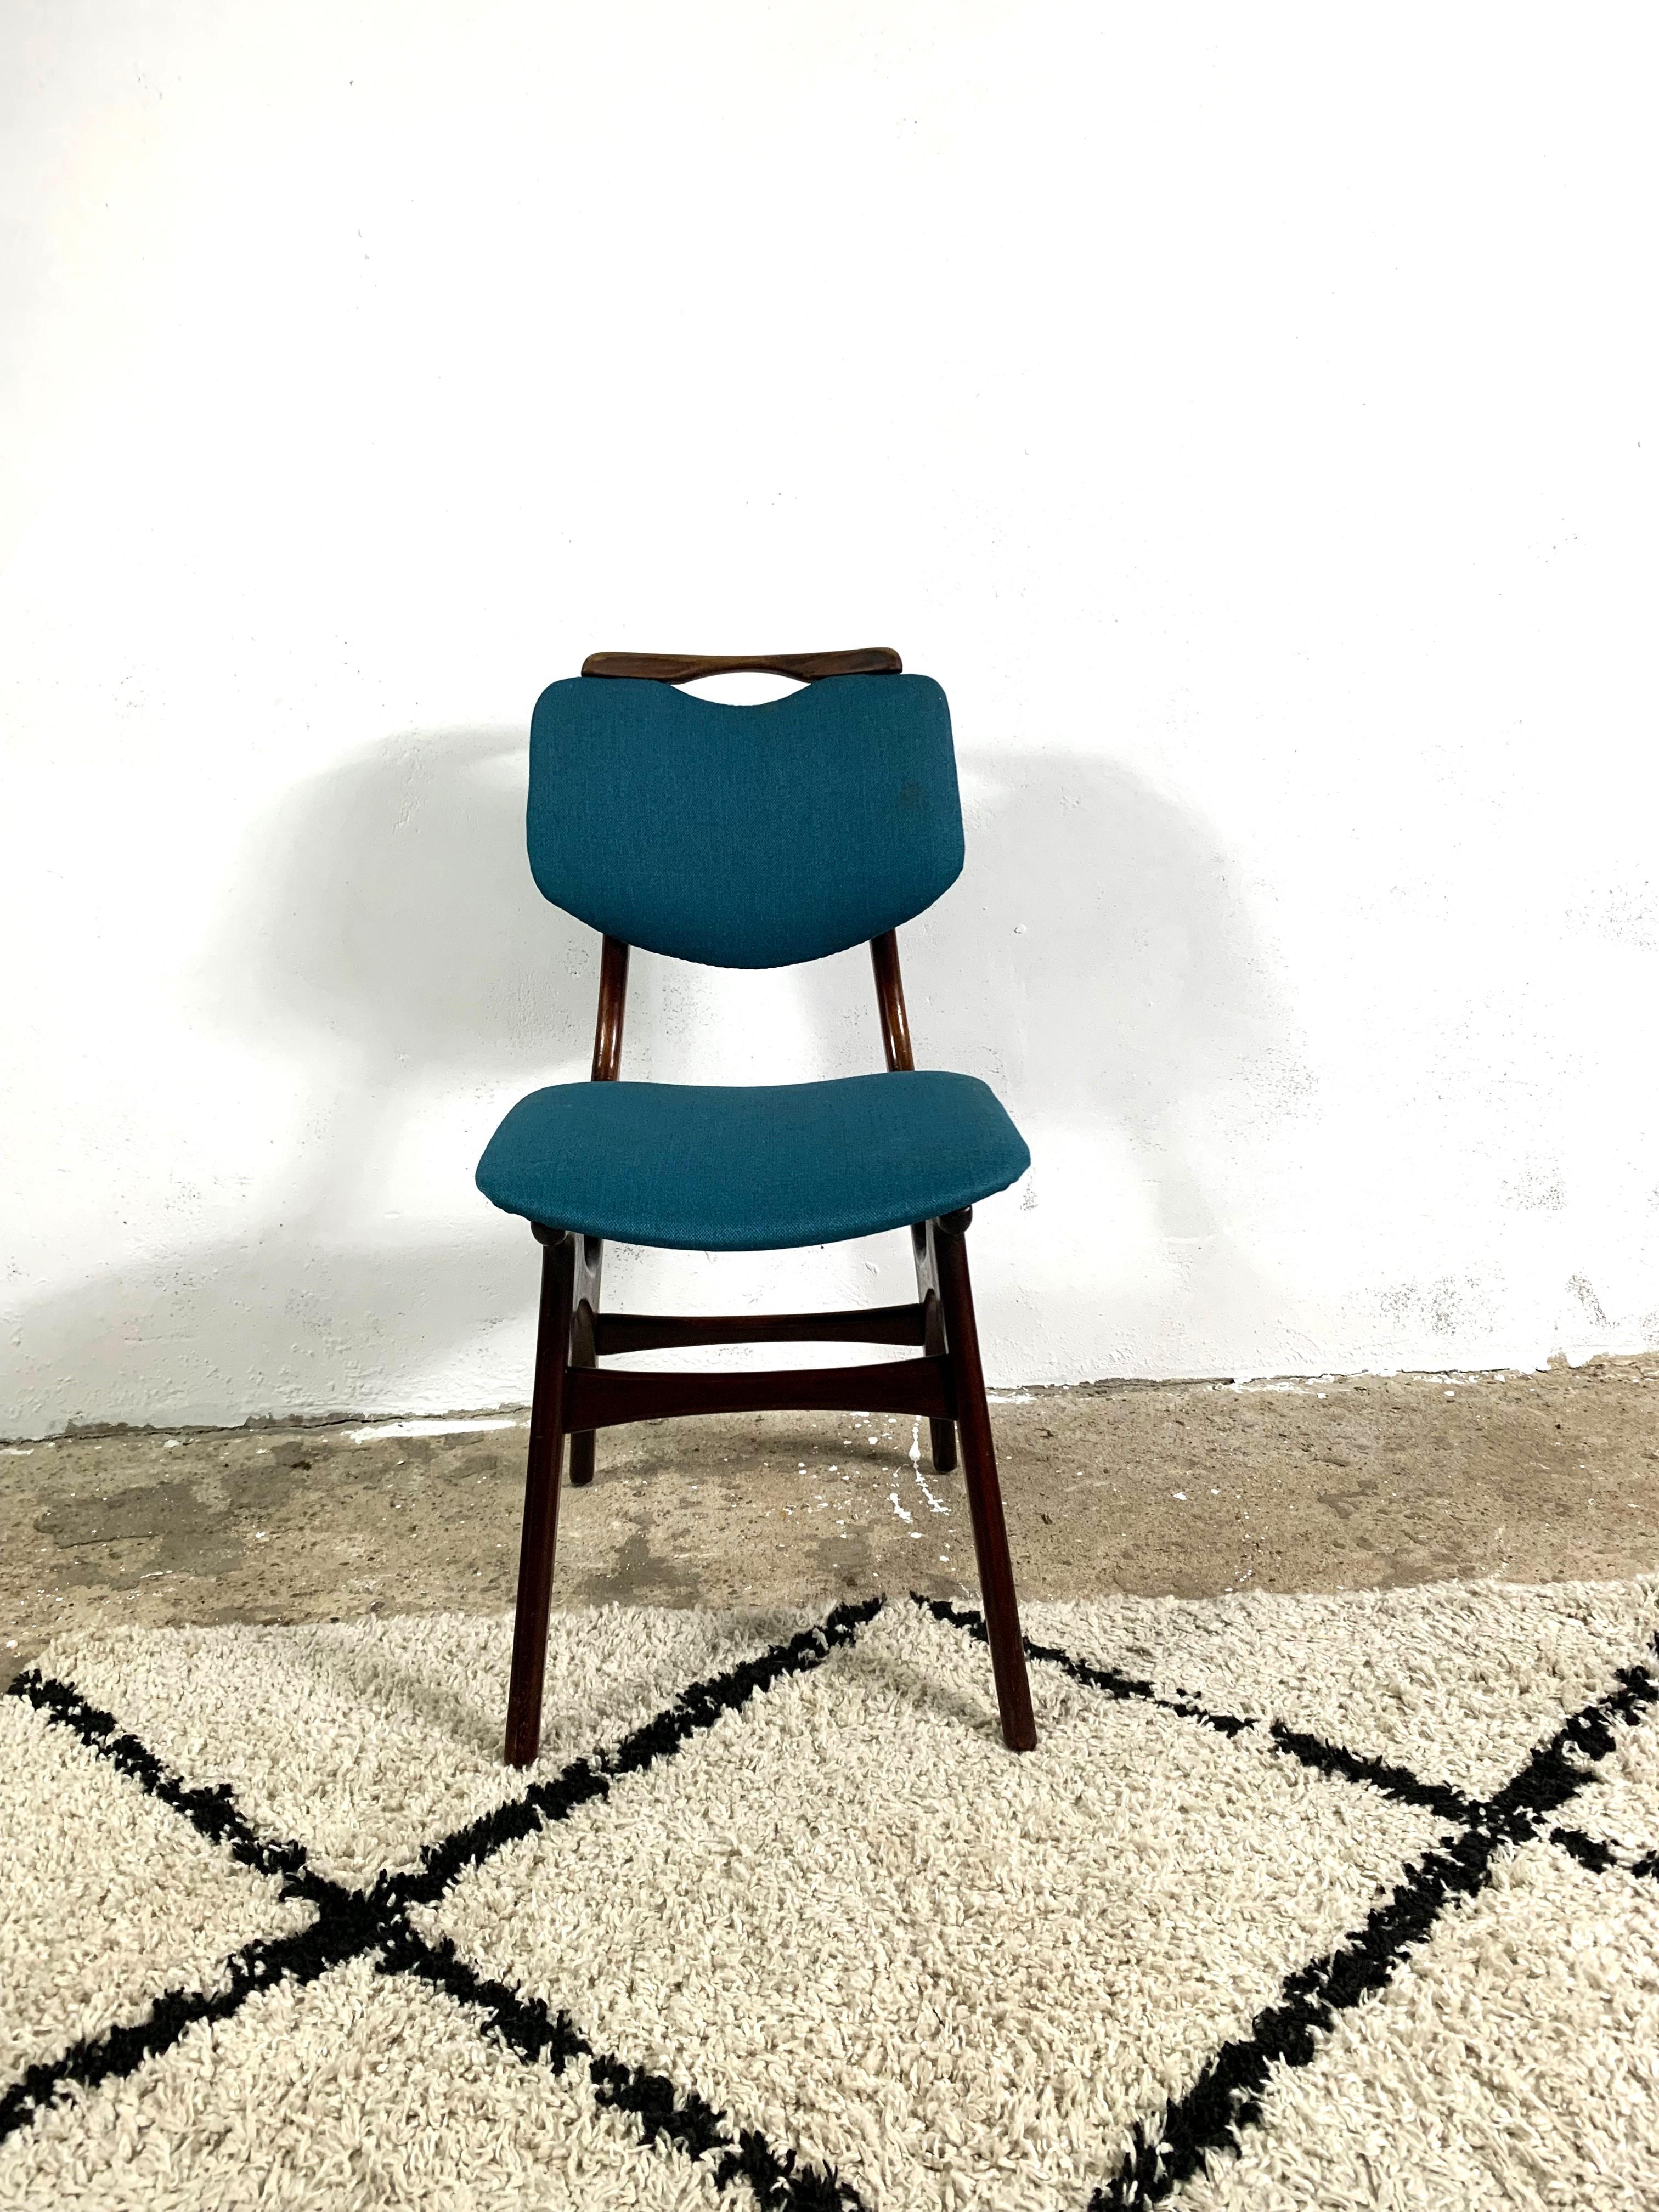 Une belle chaise en teck à la forme organique. Cadre en teck rénové, sellerie remplacée. Un accent de style